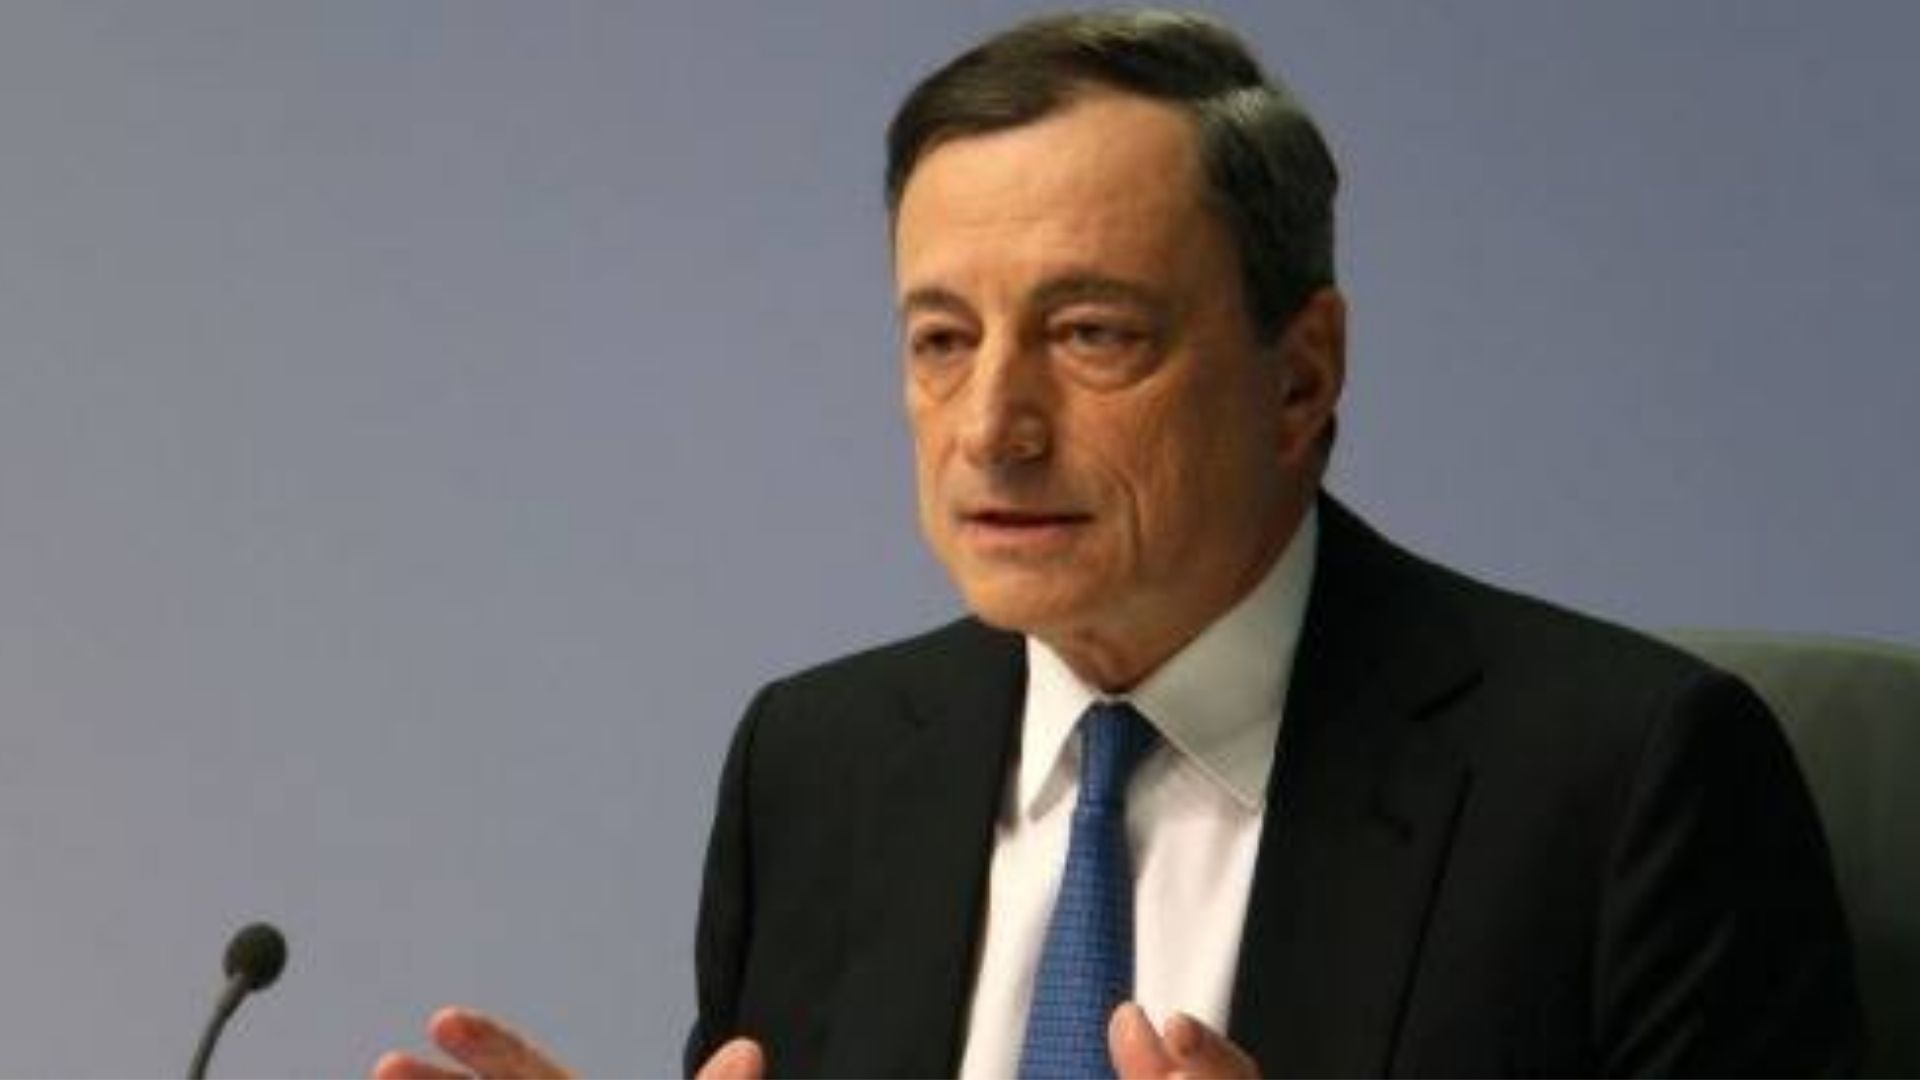 Mario Draghi dimissioni: perché oggi le presenta per prassi al giuramento di Sergio Mattarella come Presidente della Repubblica?